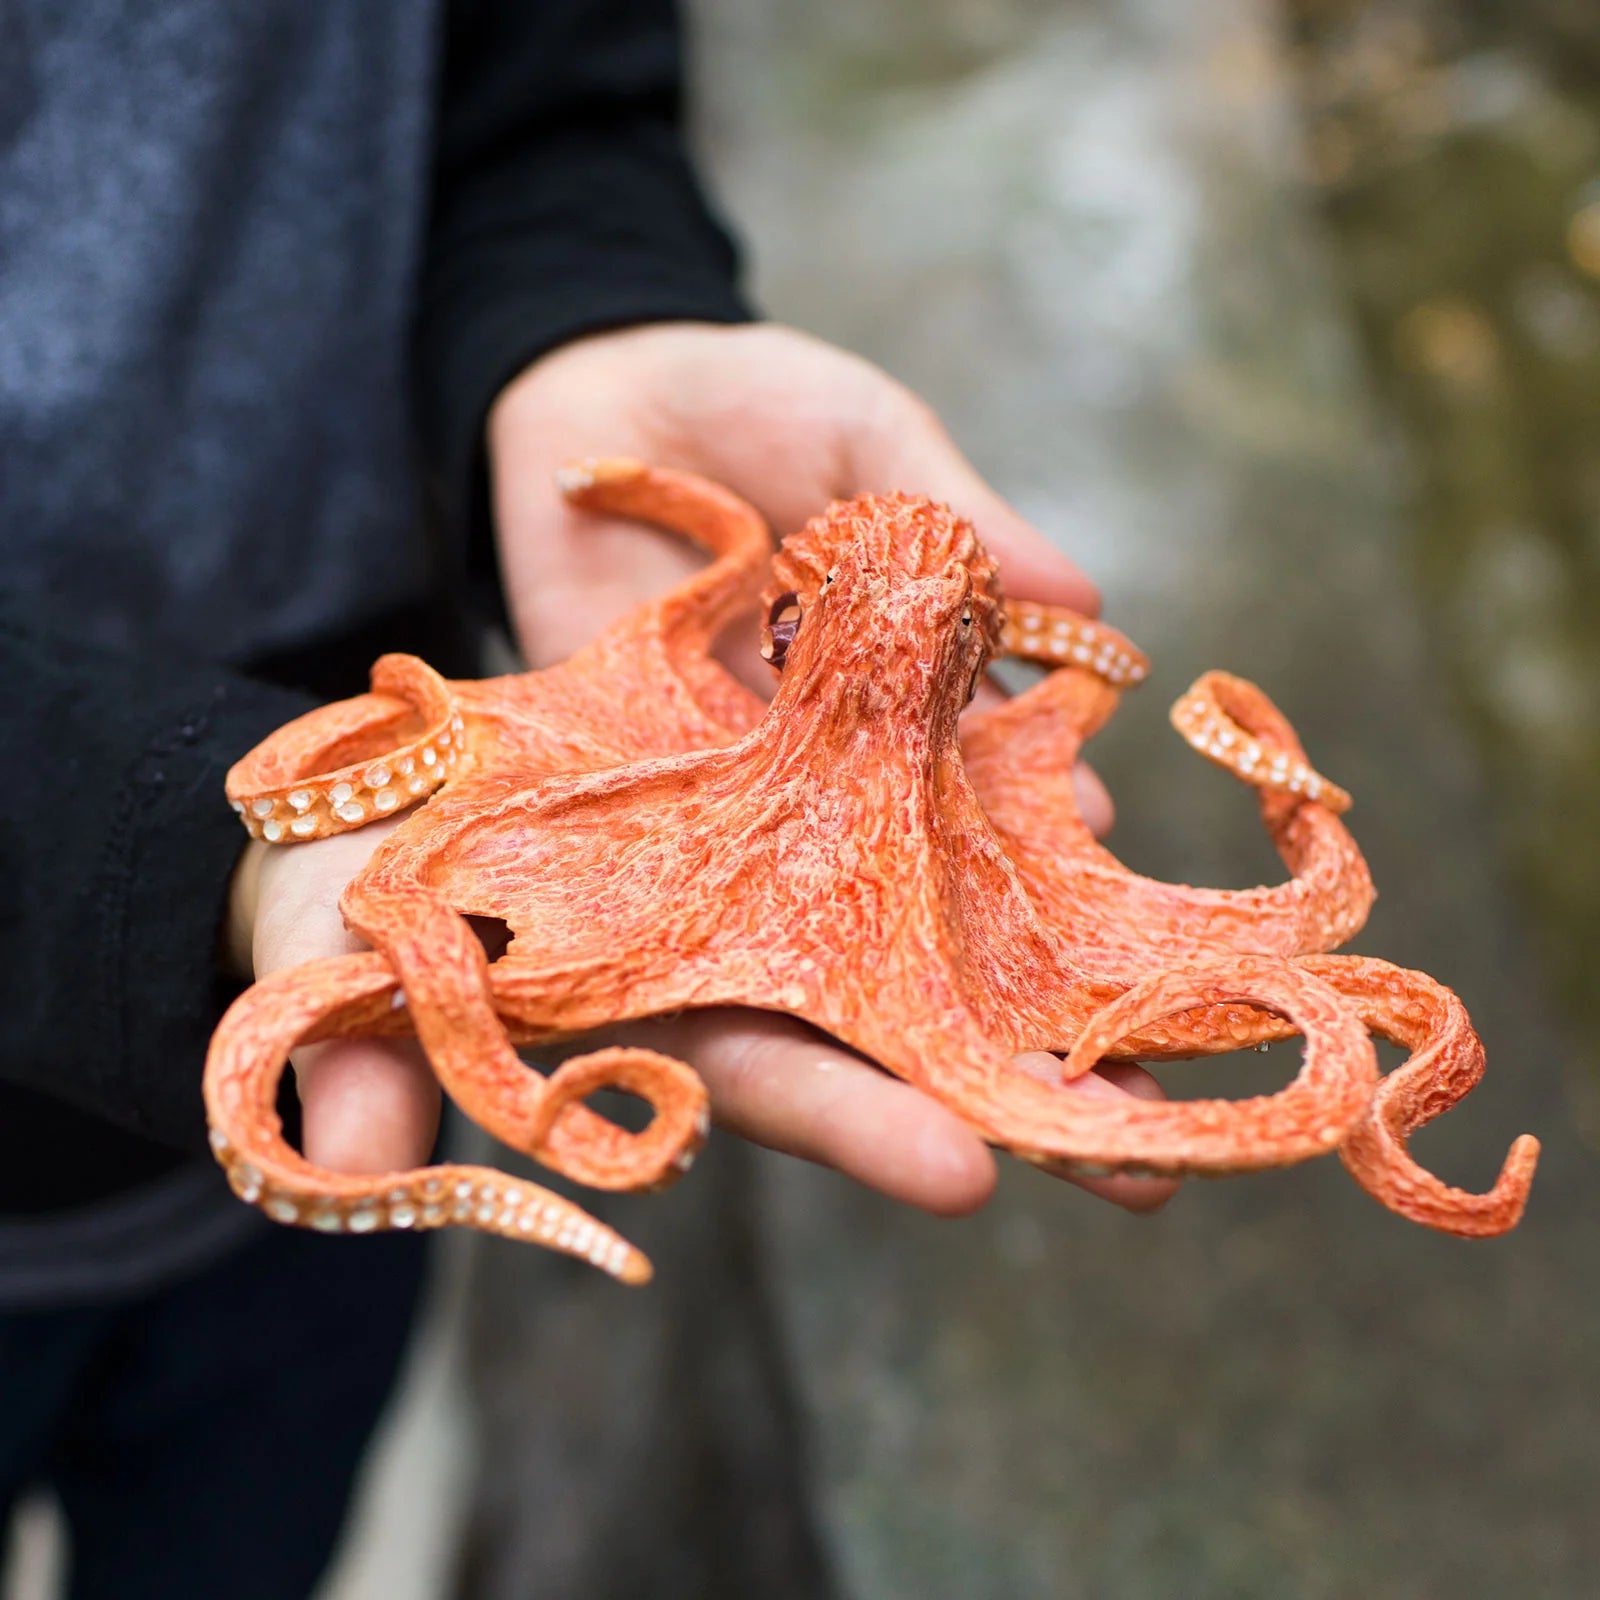 3 Deep Sea Animal Toys to Encourage Curiosity